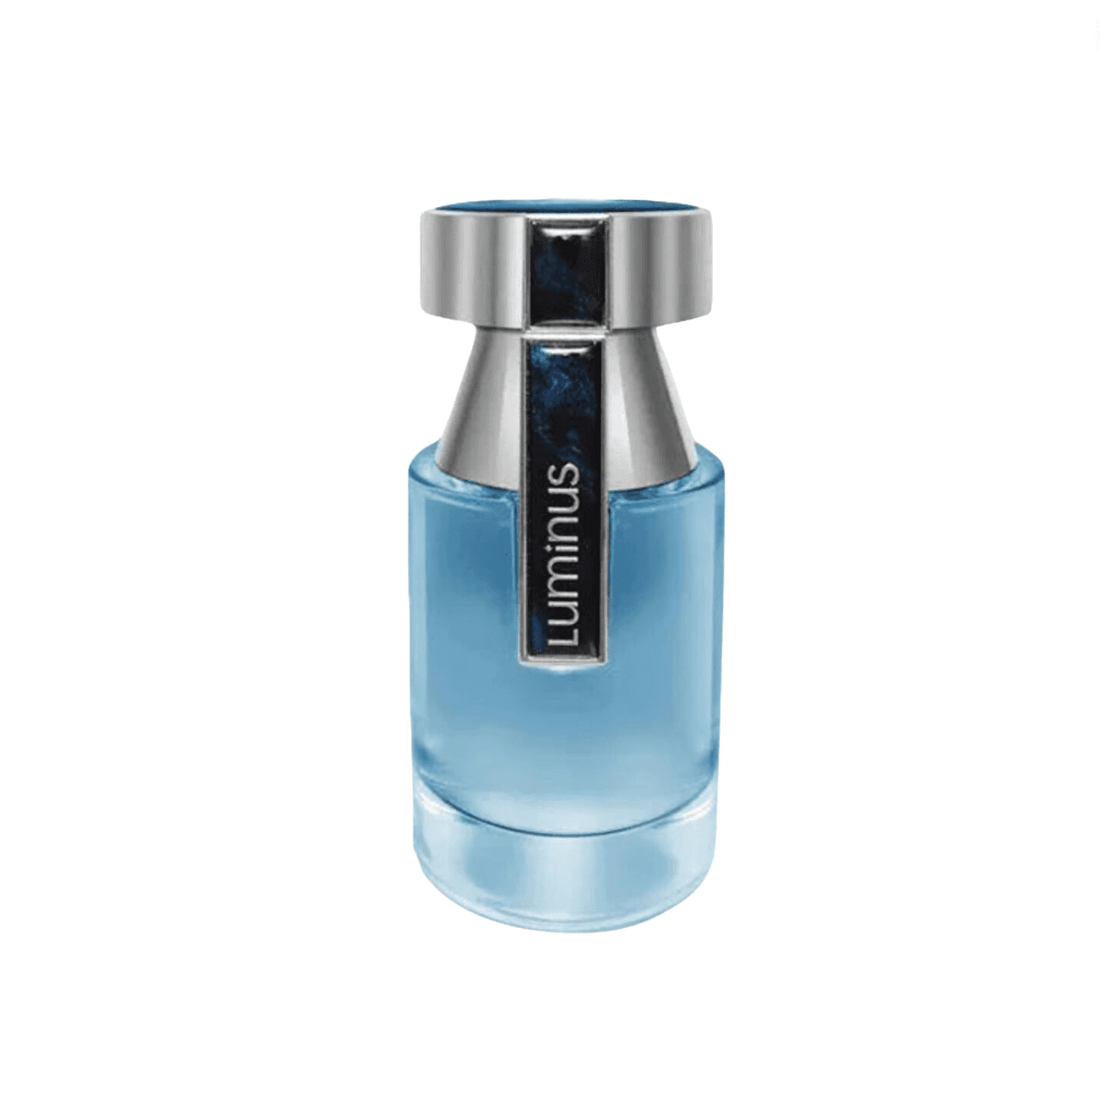 Rue Broca Luminous Homme EDP 100ml - Best Perfume For Men's